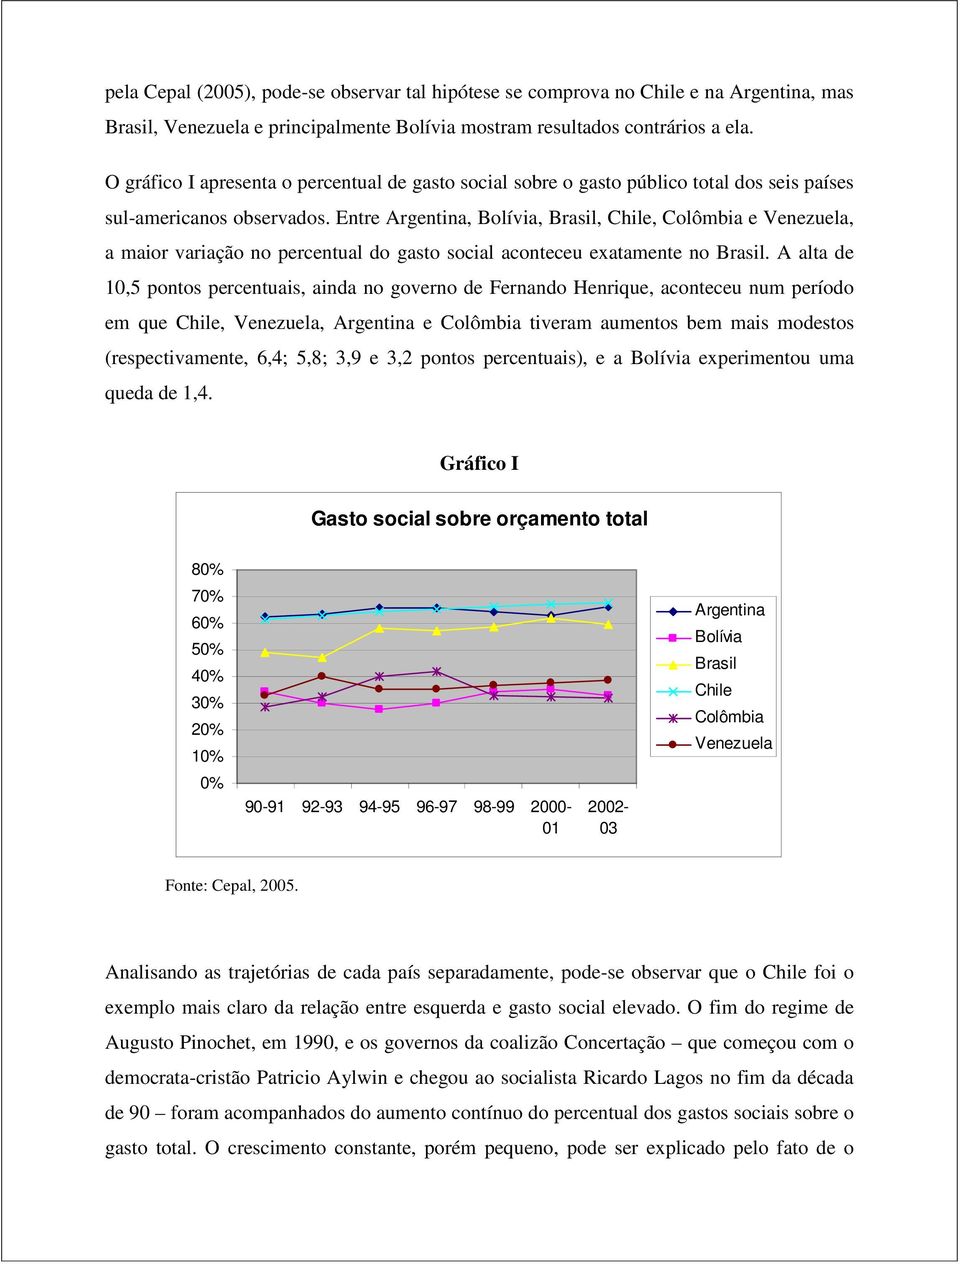 Entre Argentina, Bolívia, Brasil, Chile, Colômbia e Venezuela, a maior variação no percentual do gasto social aconteceu exatamente no Brasil.